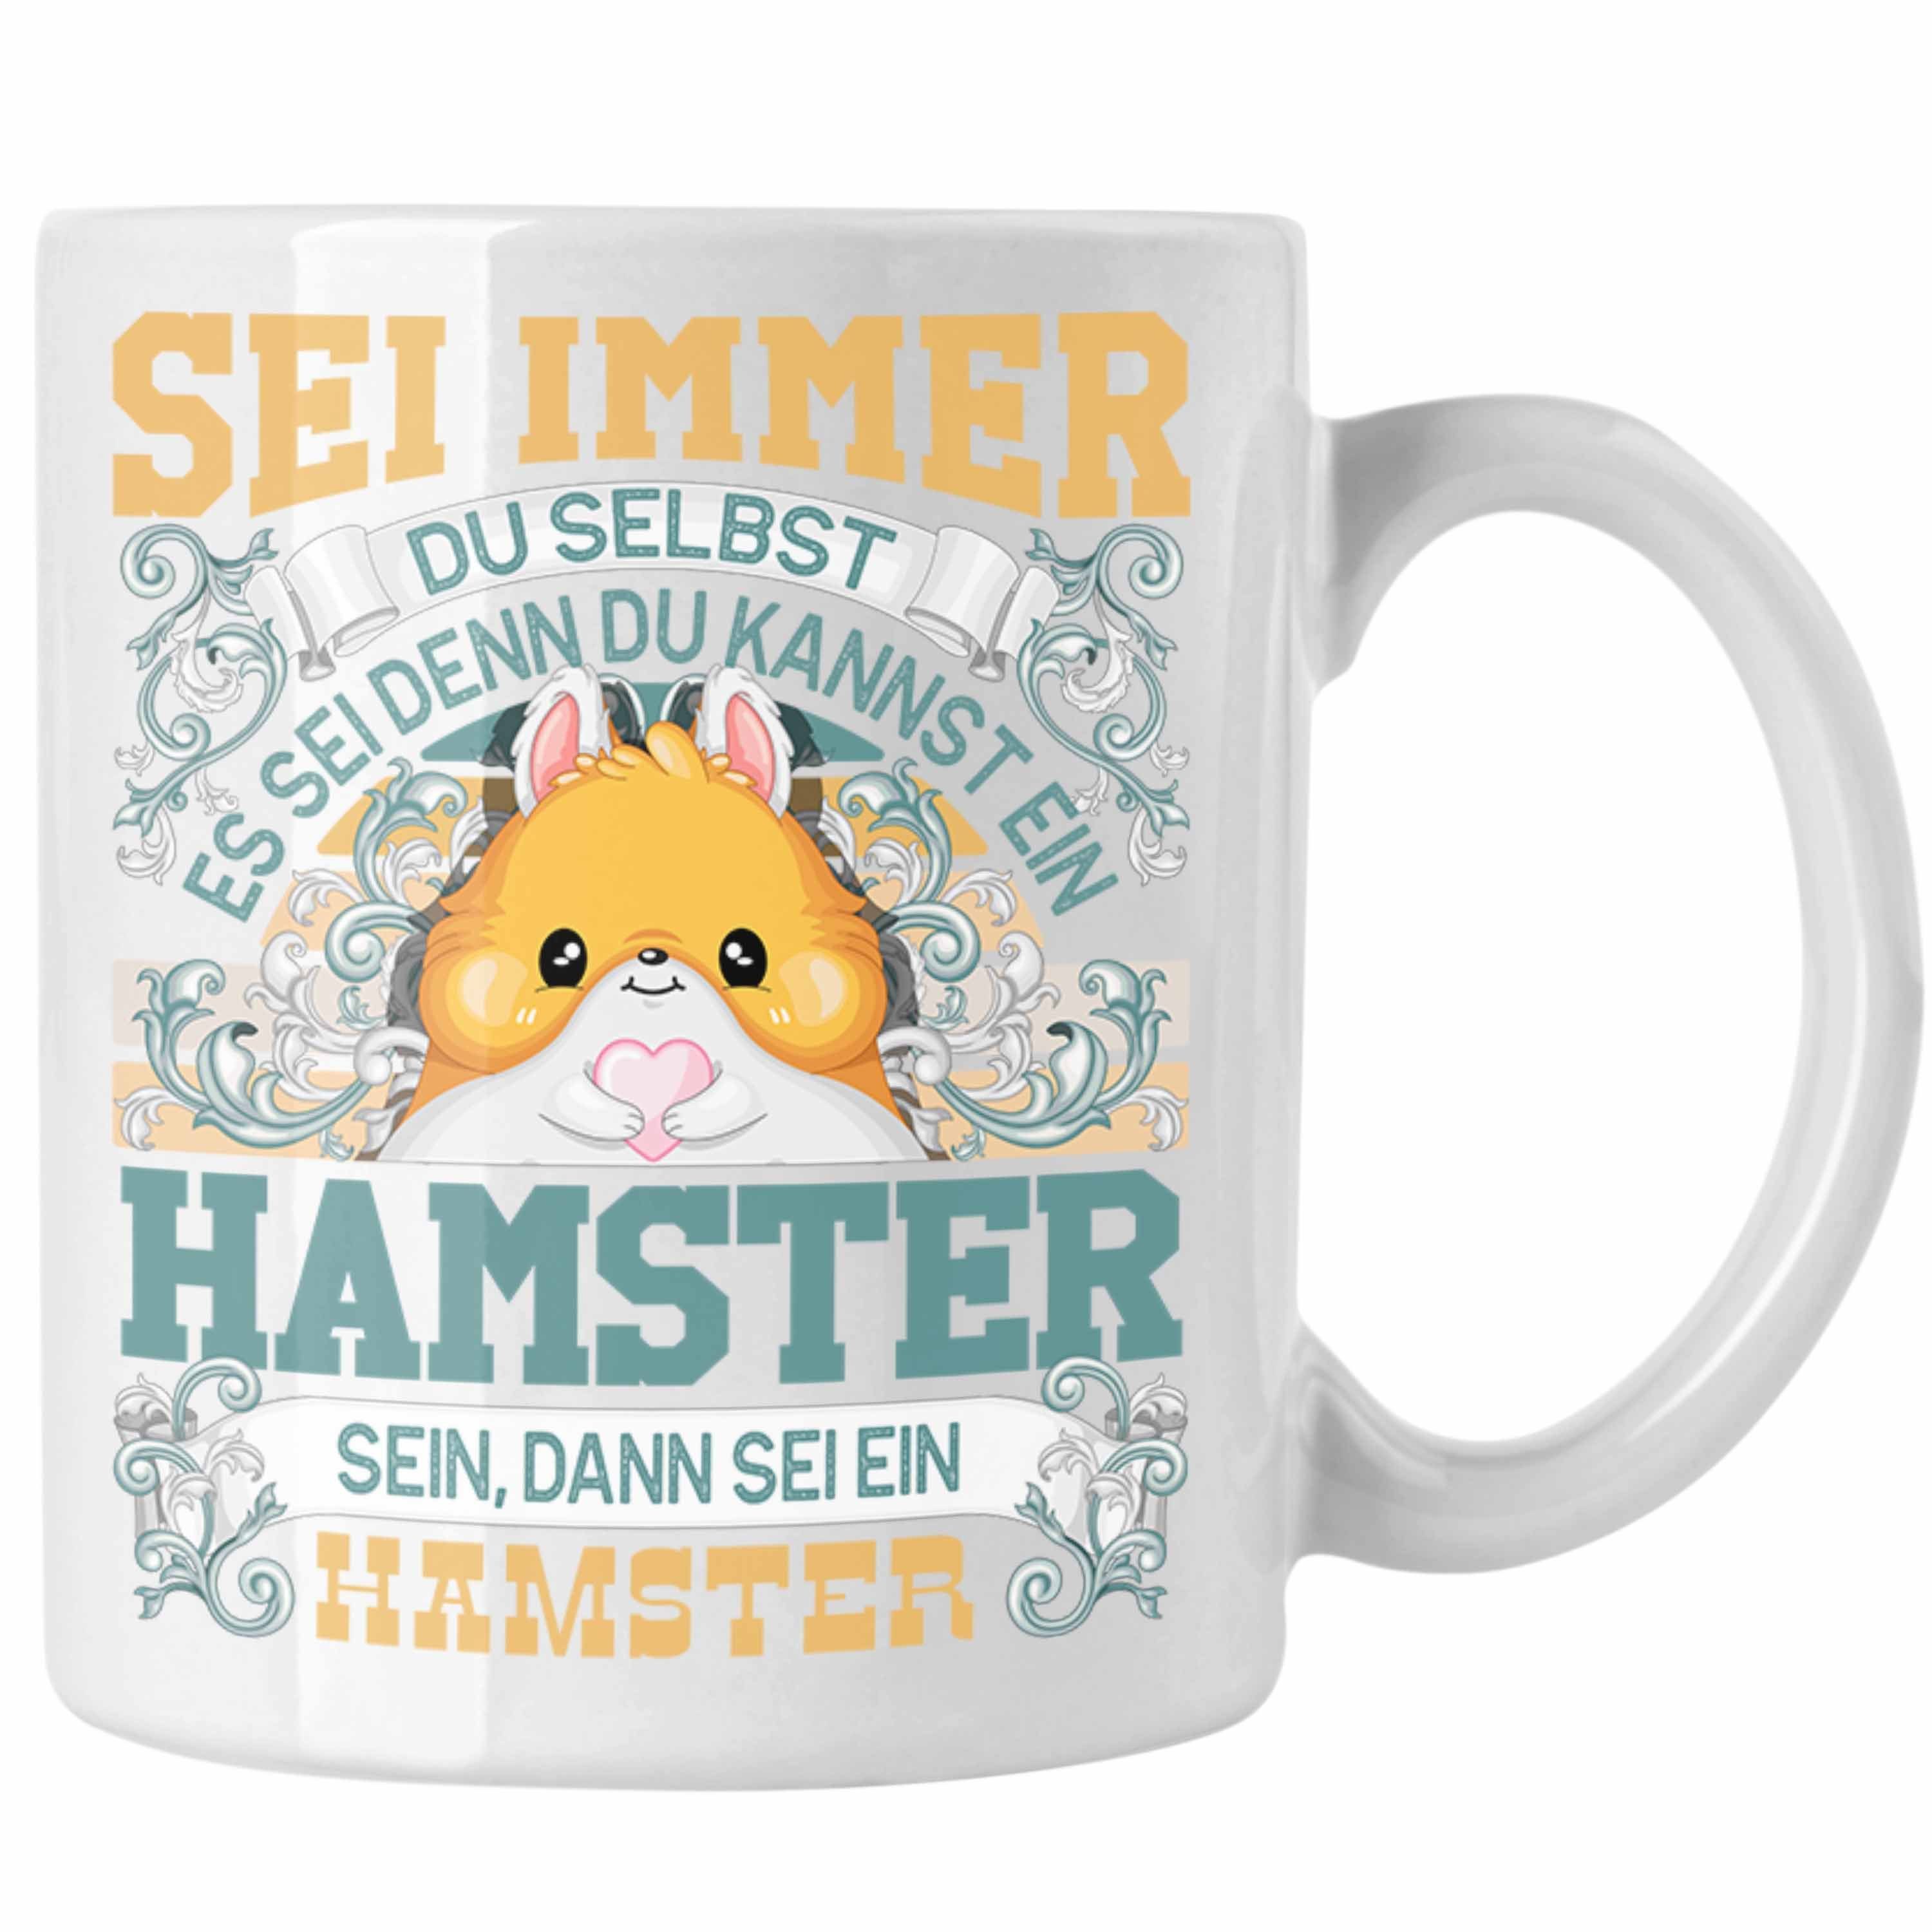 Trendation Tasse Hamster Tasse Geschenk Hamster Liebhaber Sei immer Du Selbst Spruch Weiss